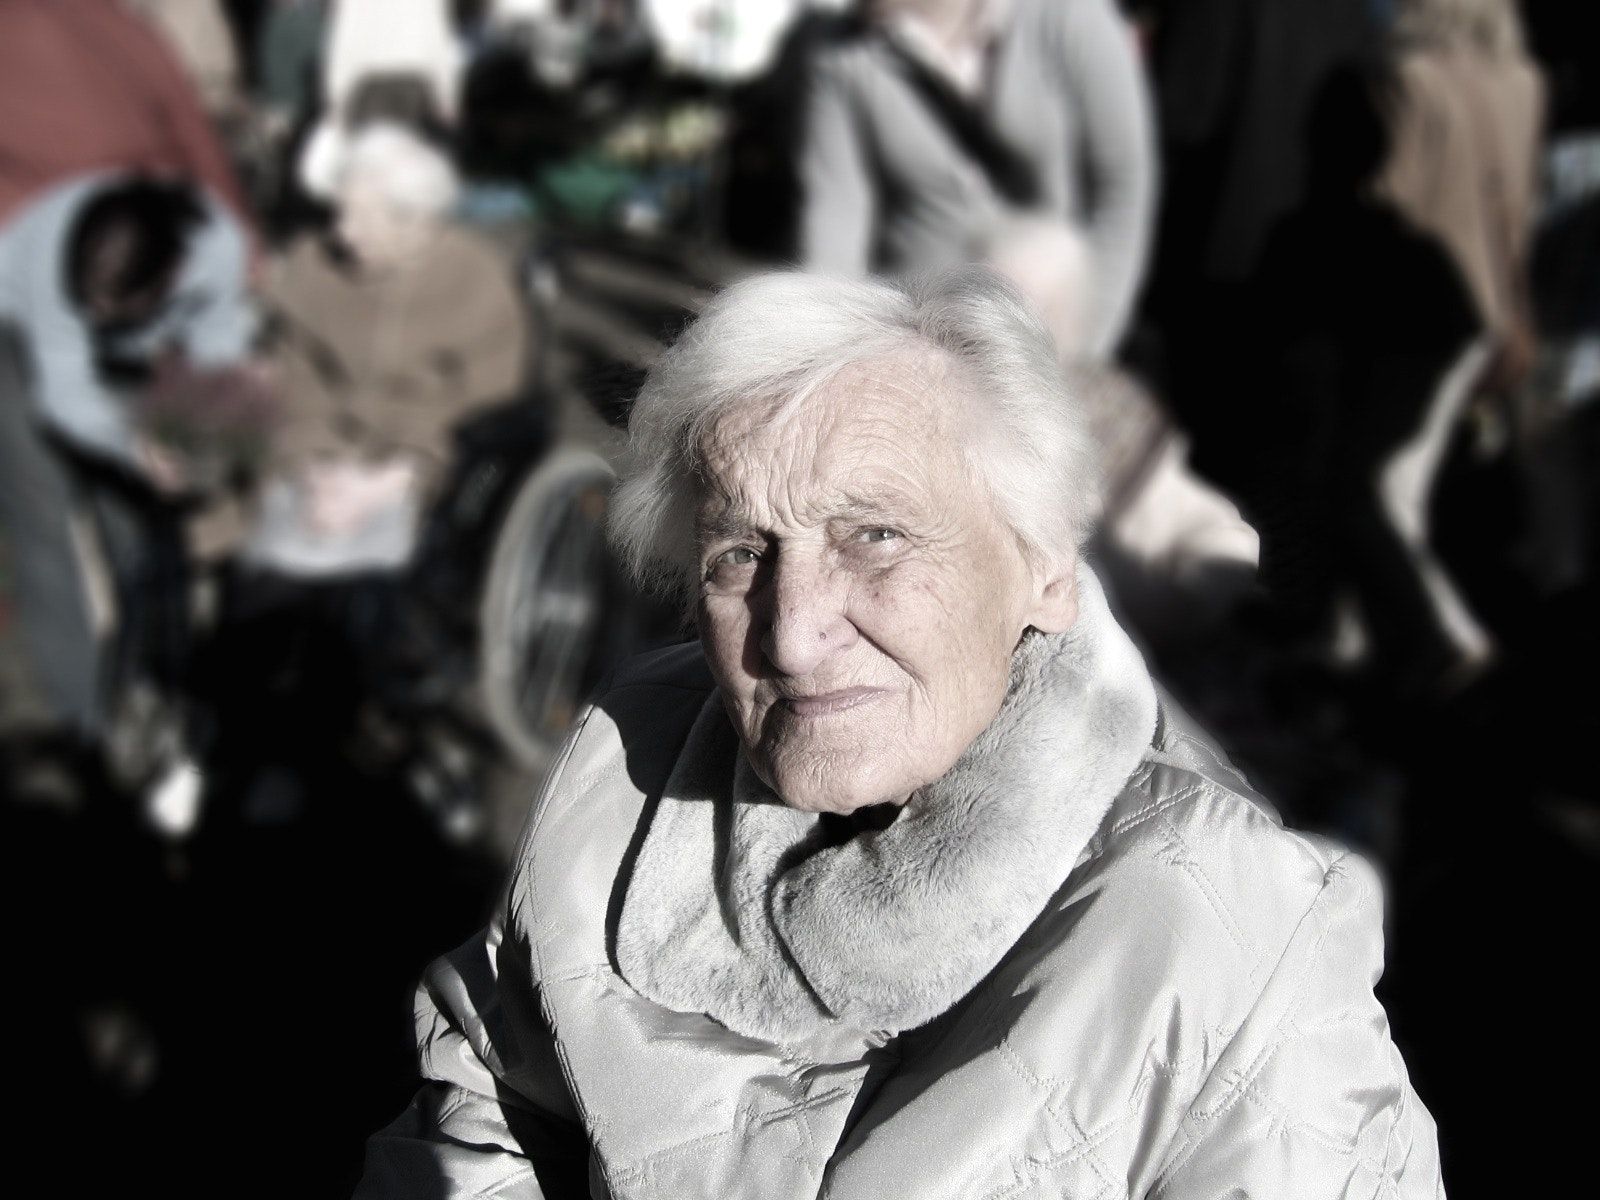 La violencia contra la mujer mayor: invisible, pero muy real